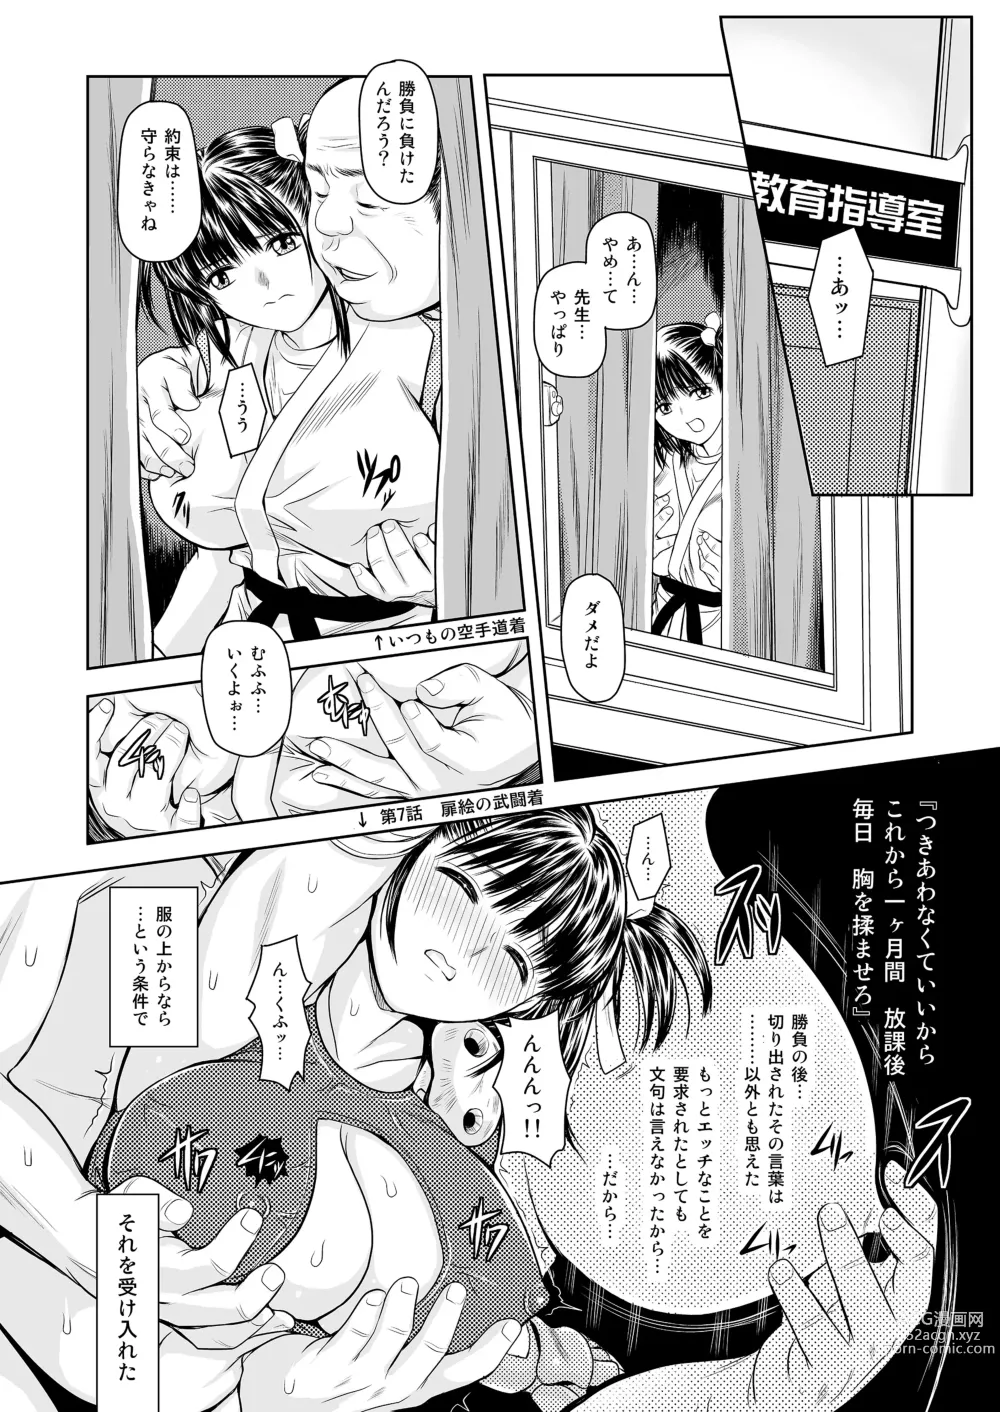 Page 16 of doujinshi Tsukiatte yo! Satsuki-chan VIRGIN FLIGHT:05